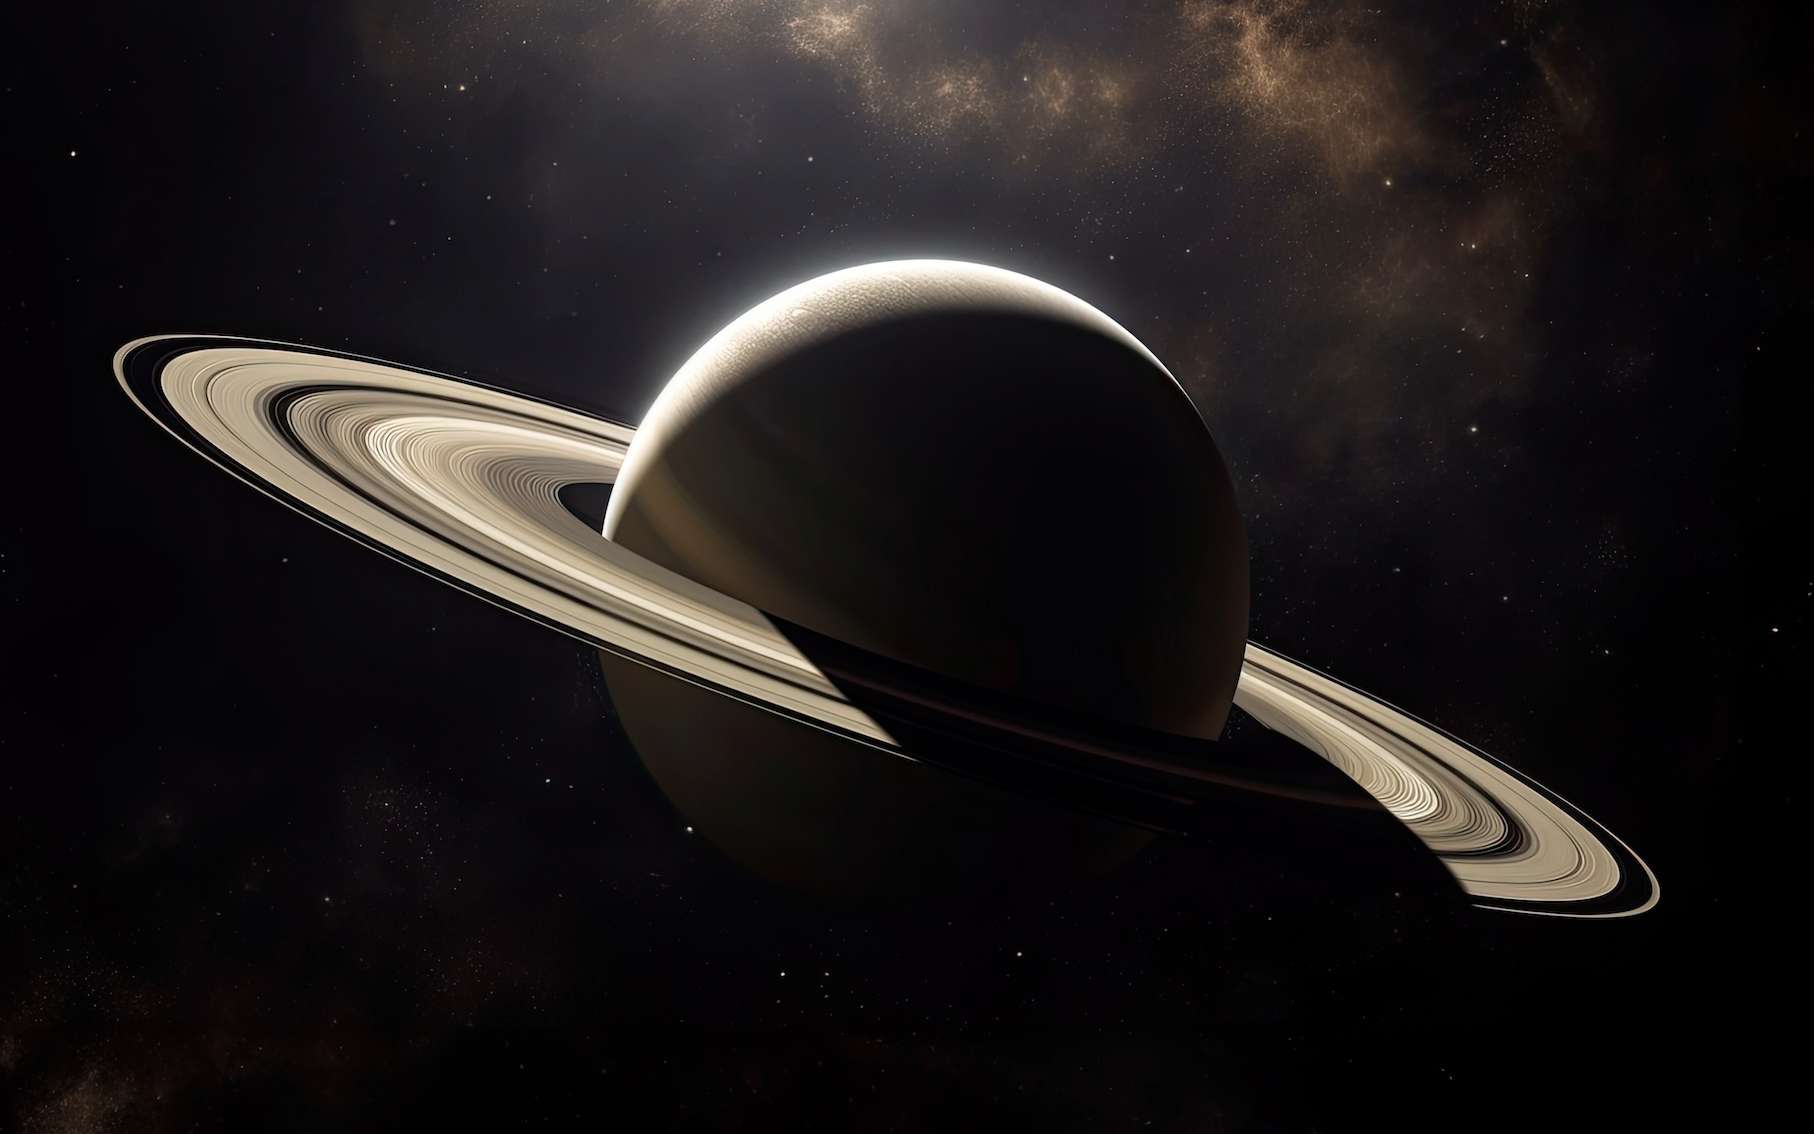 Saturne dévoile ses secrets : un choc titanesque serait à l'origine de ses anneaux !